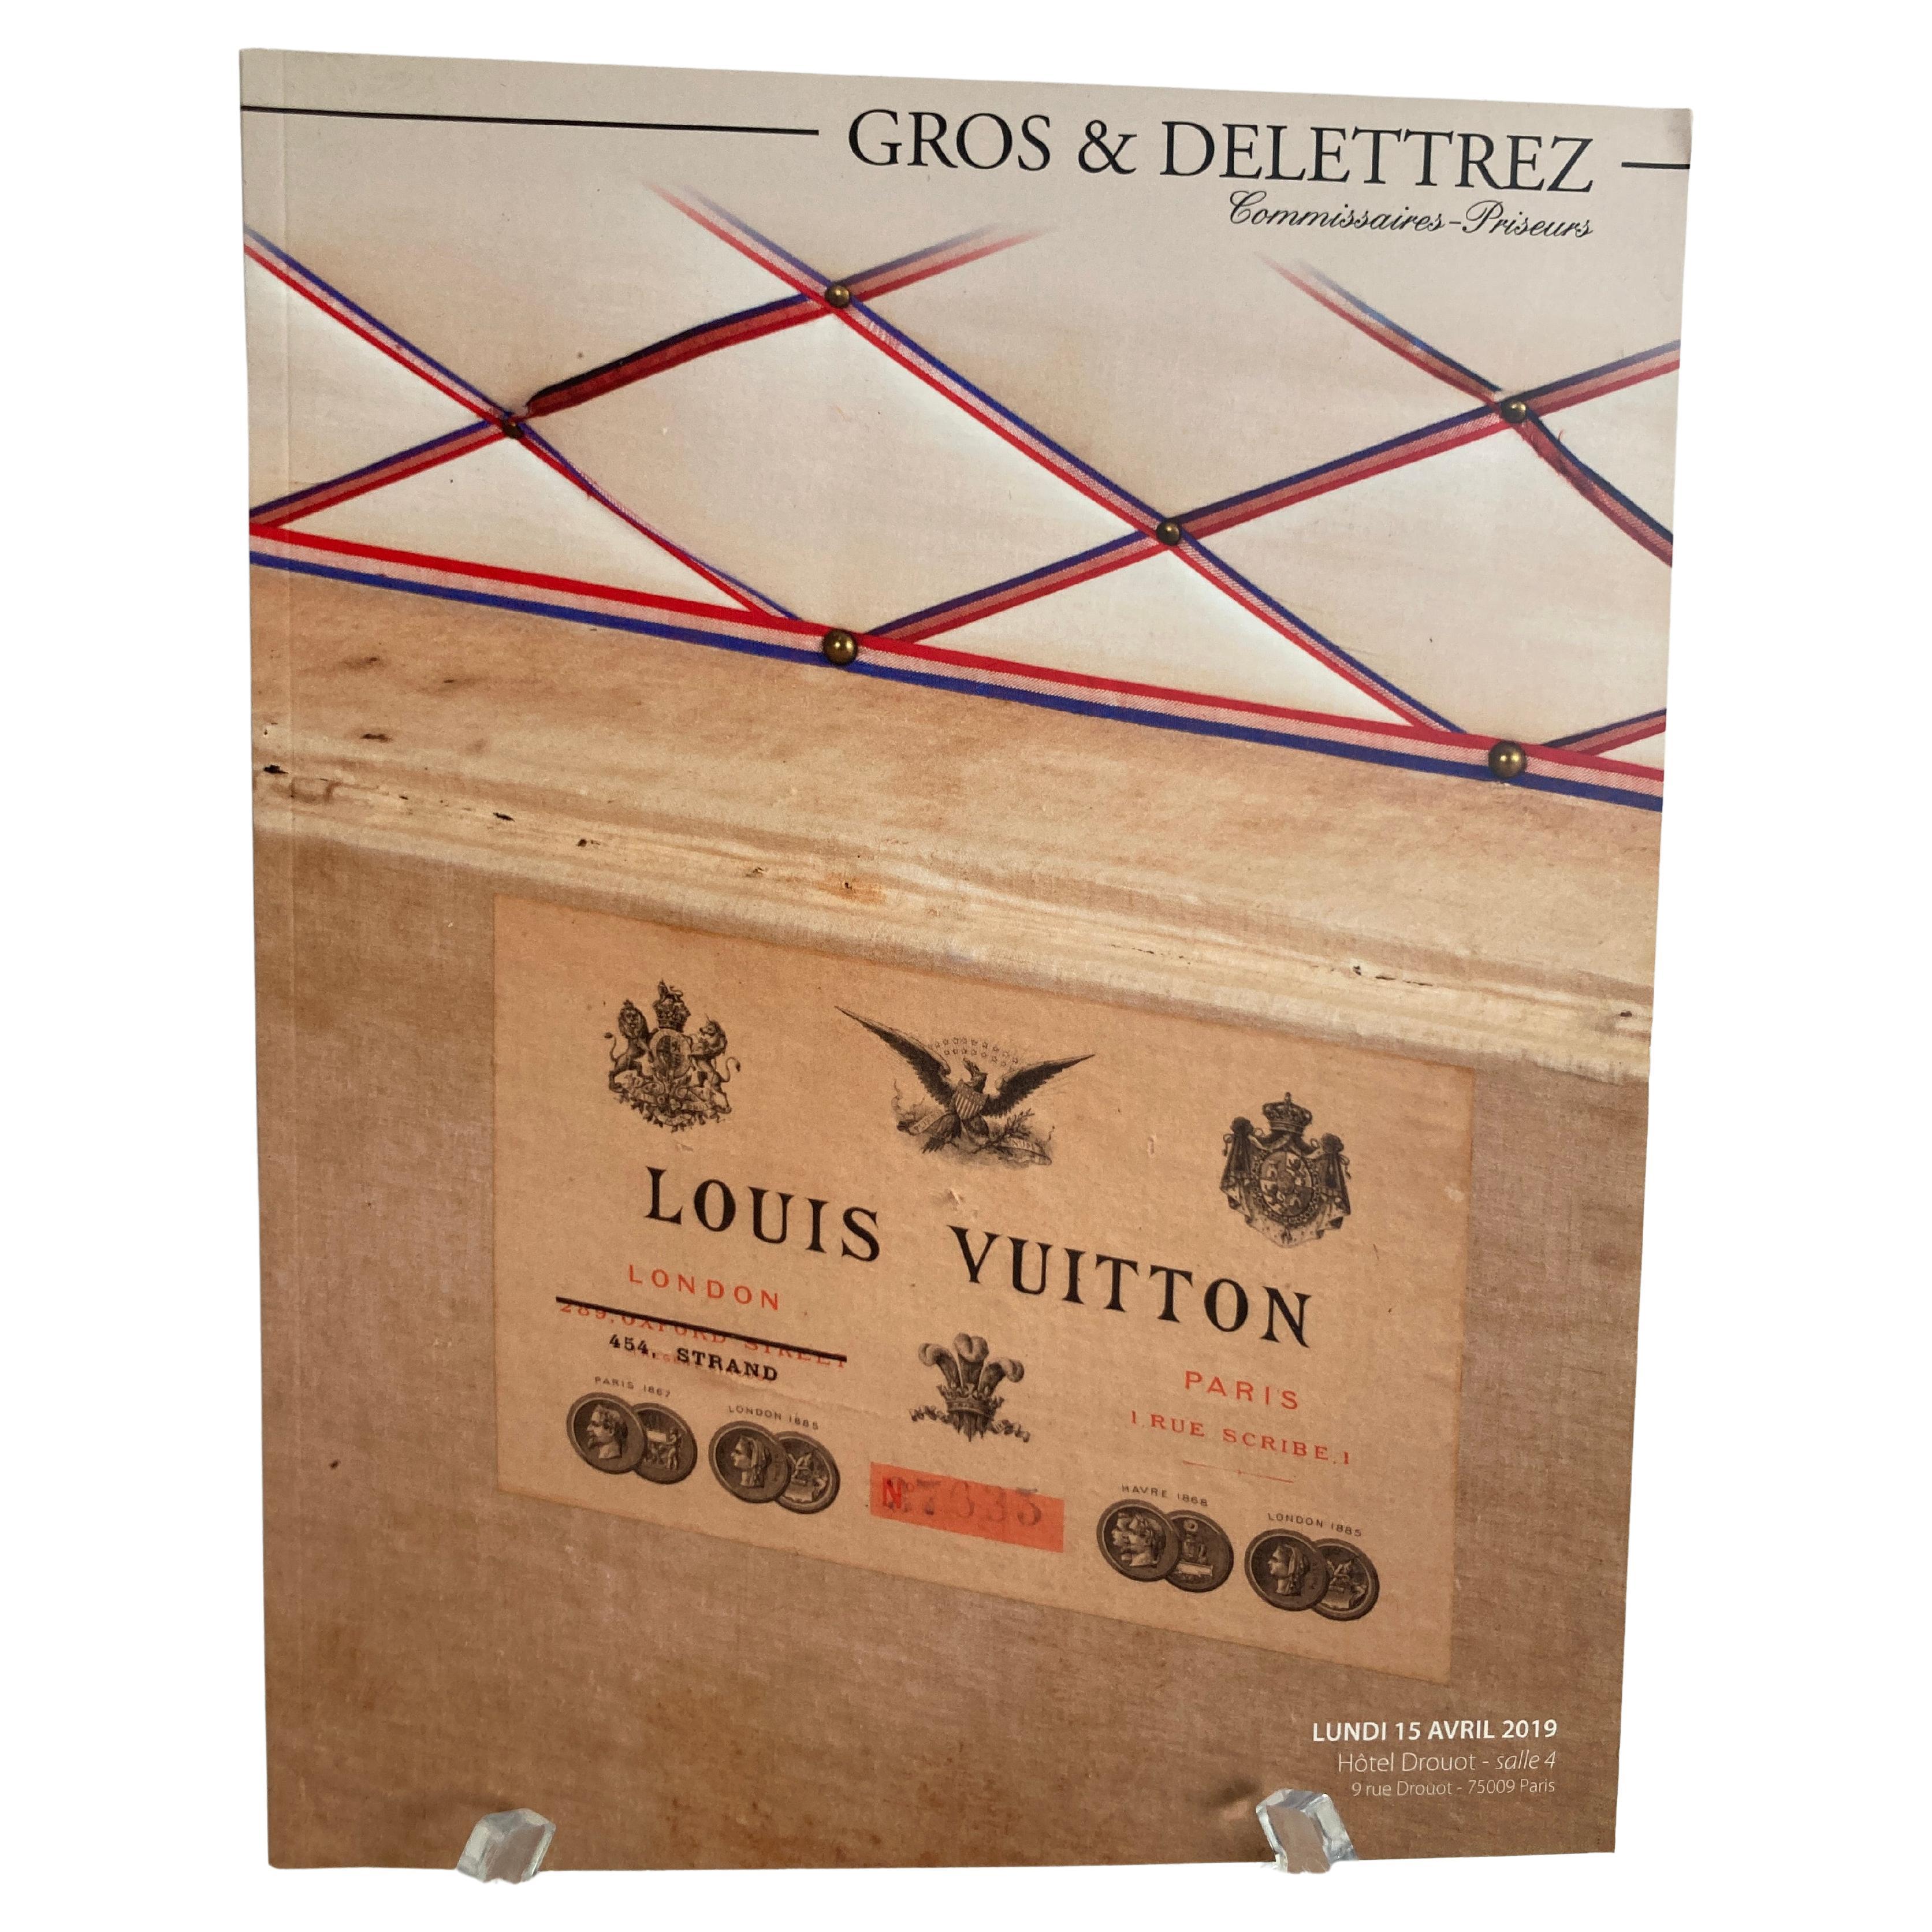 Louis Vuitton Paris Auction Catalog 2019  by Gros & Delettrez